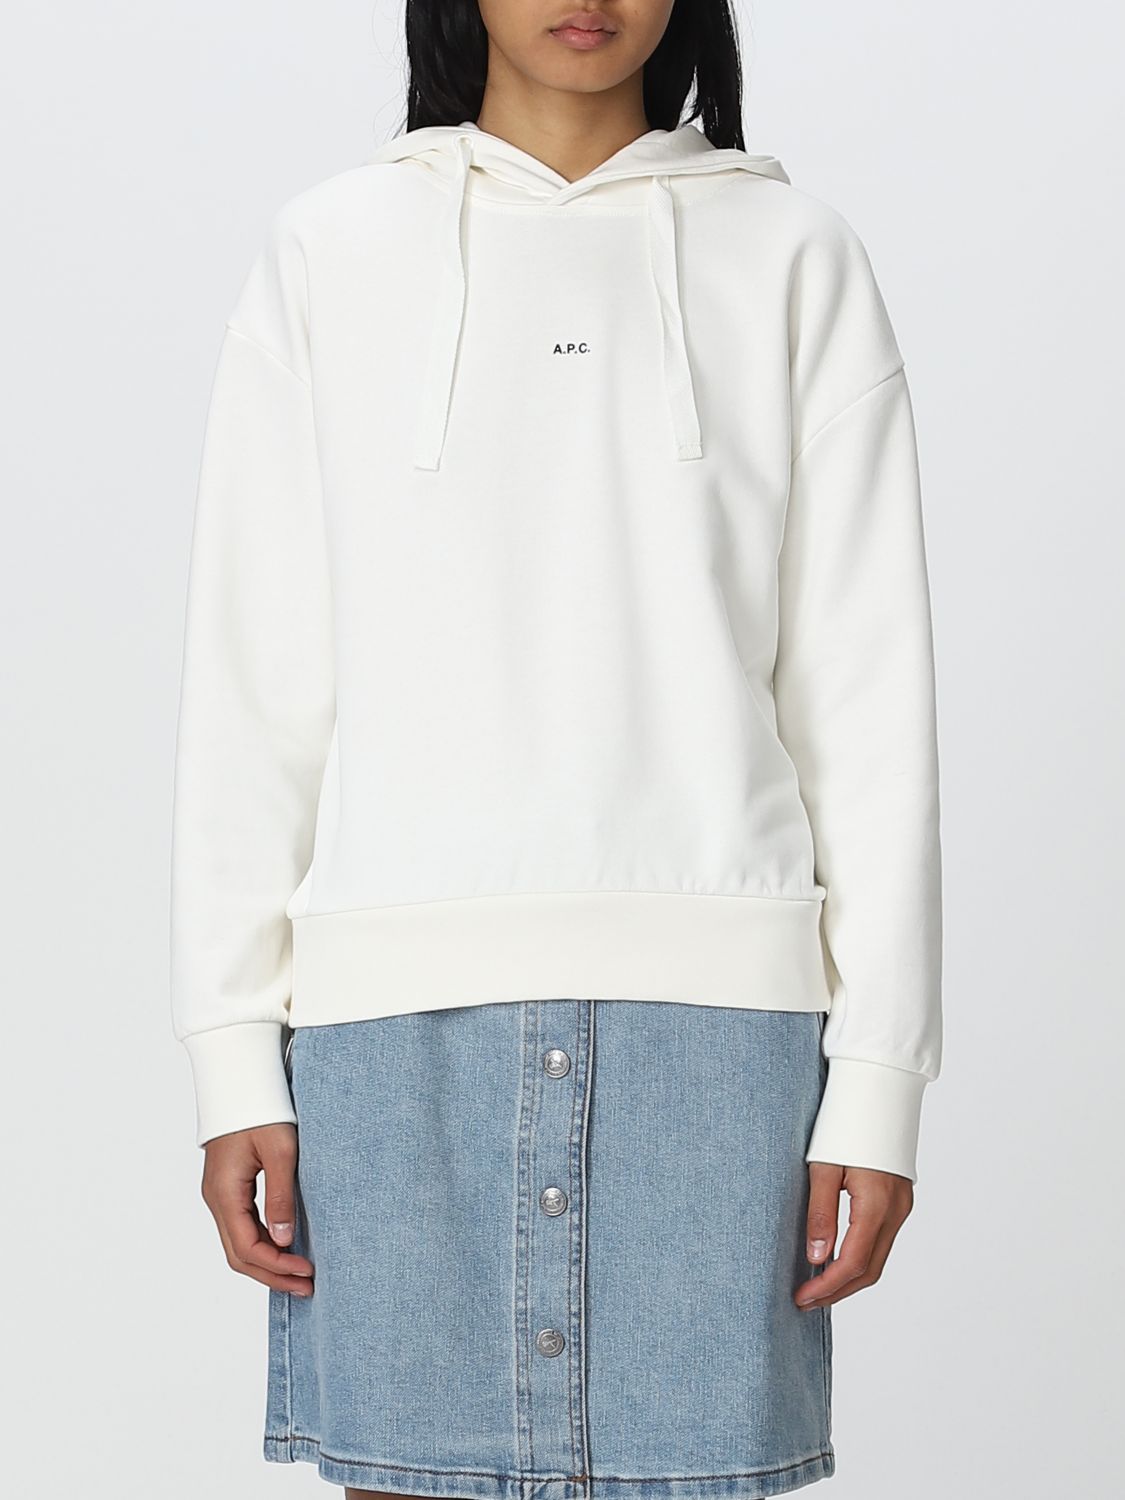 Shop Apc Sweatshirt A.p.c. Woman Color White